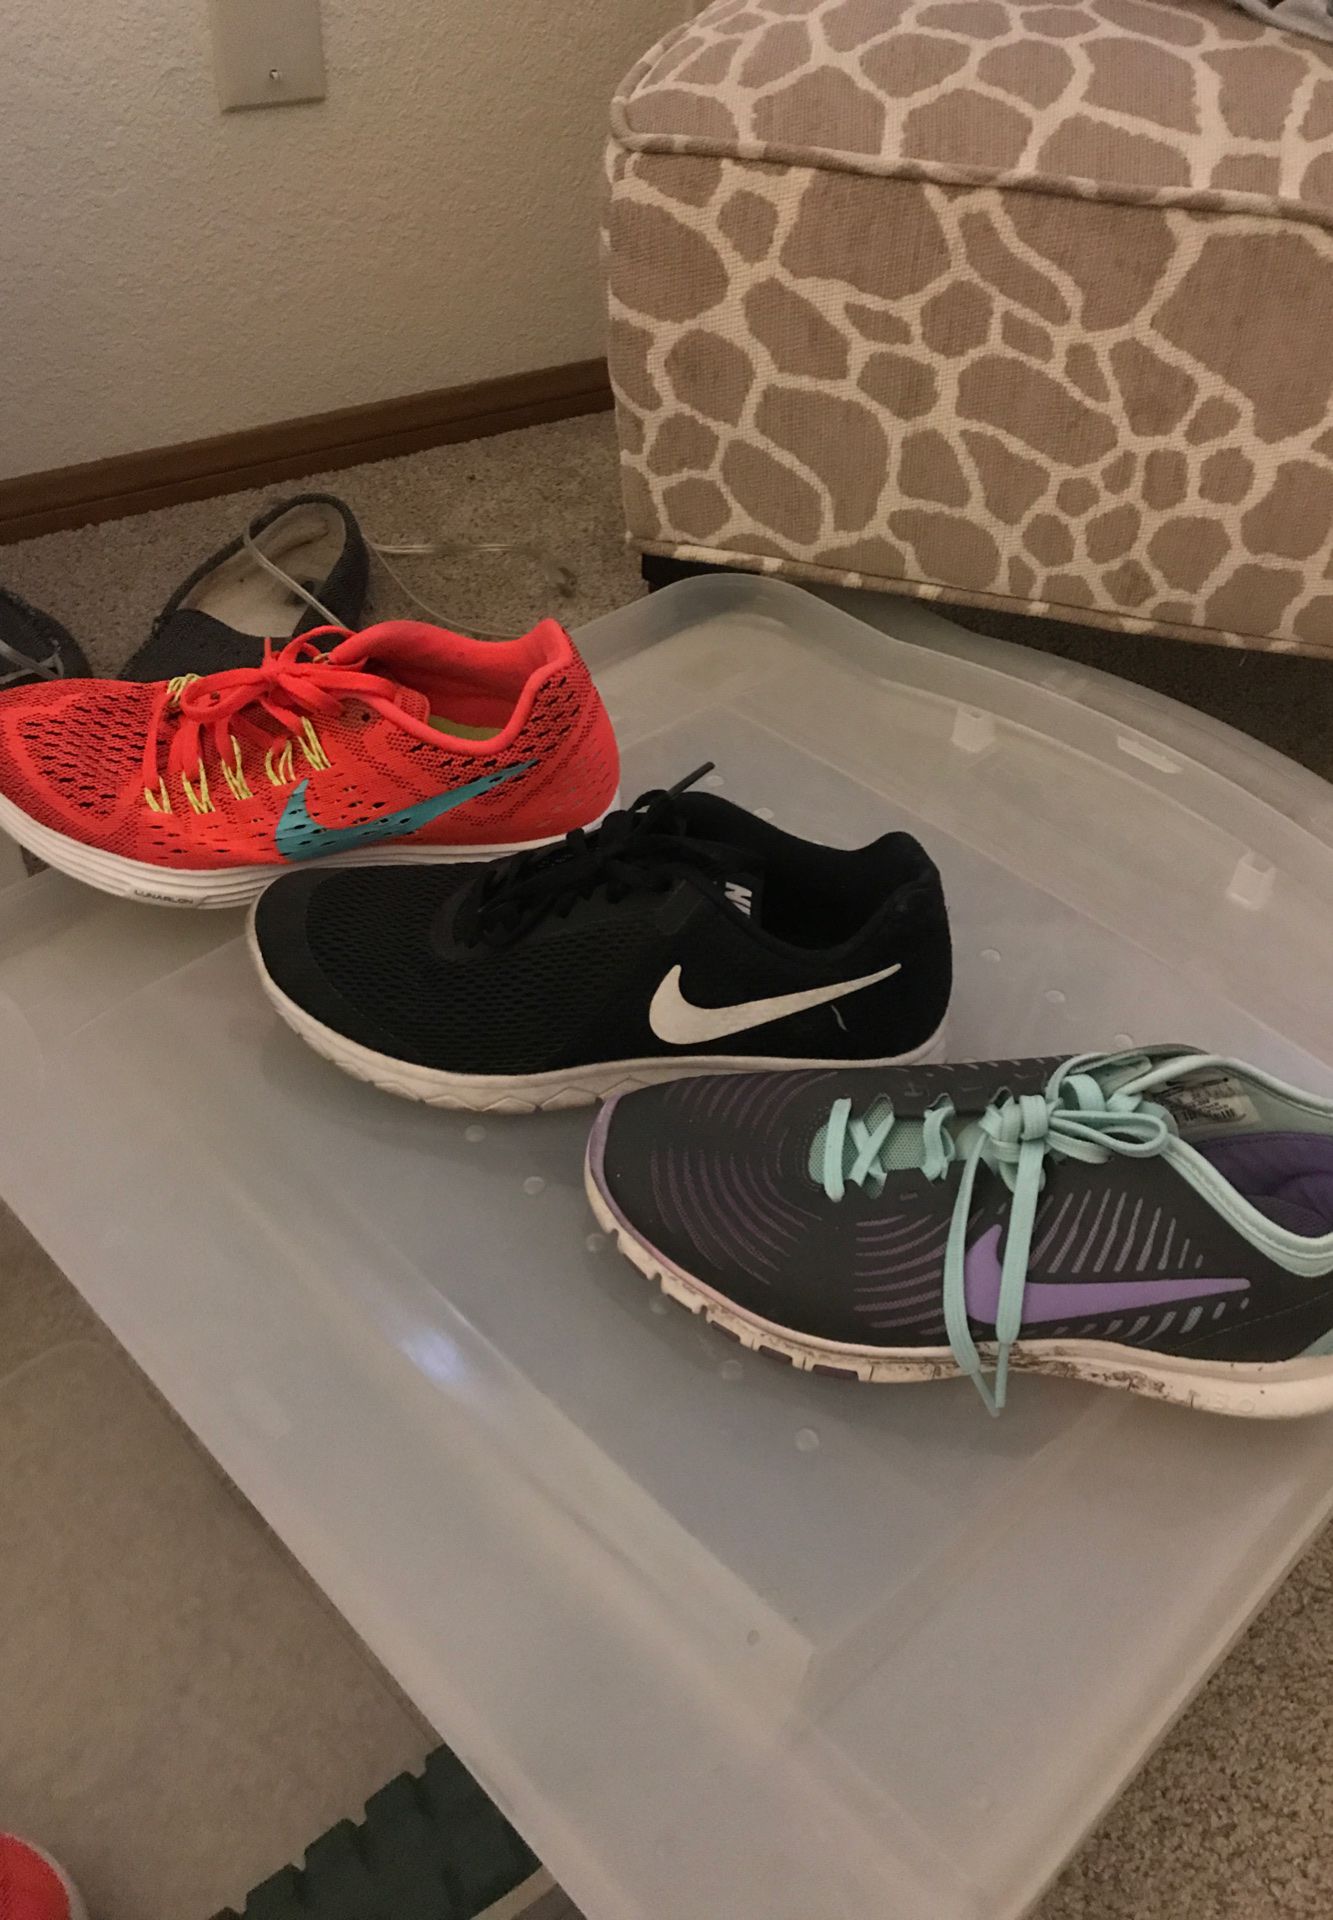 Women’s Nike running shoes